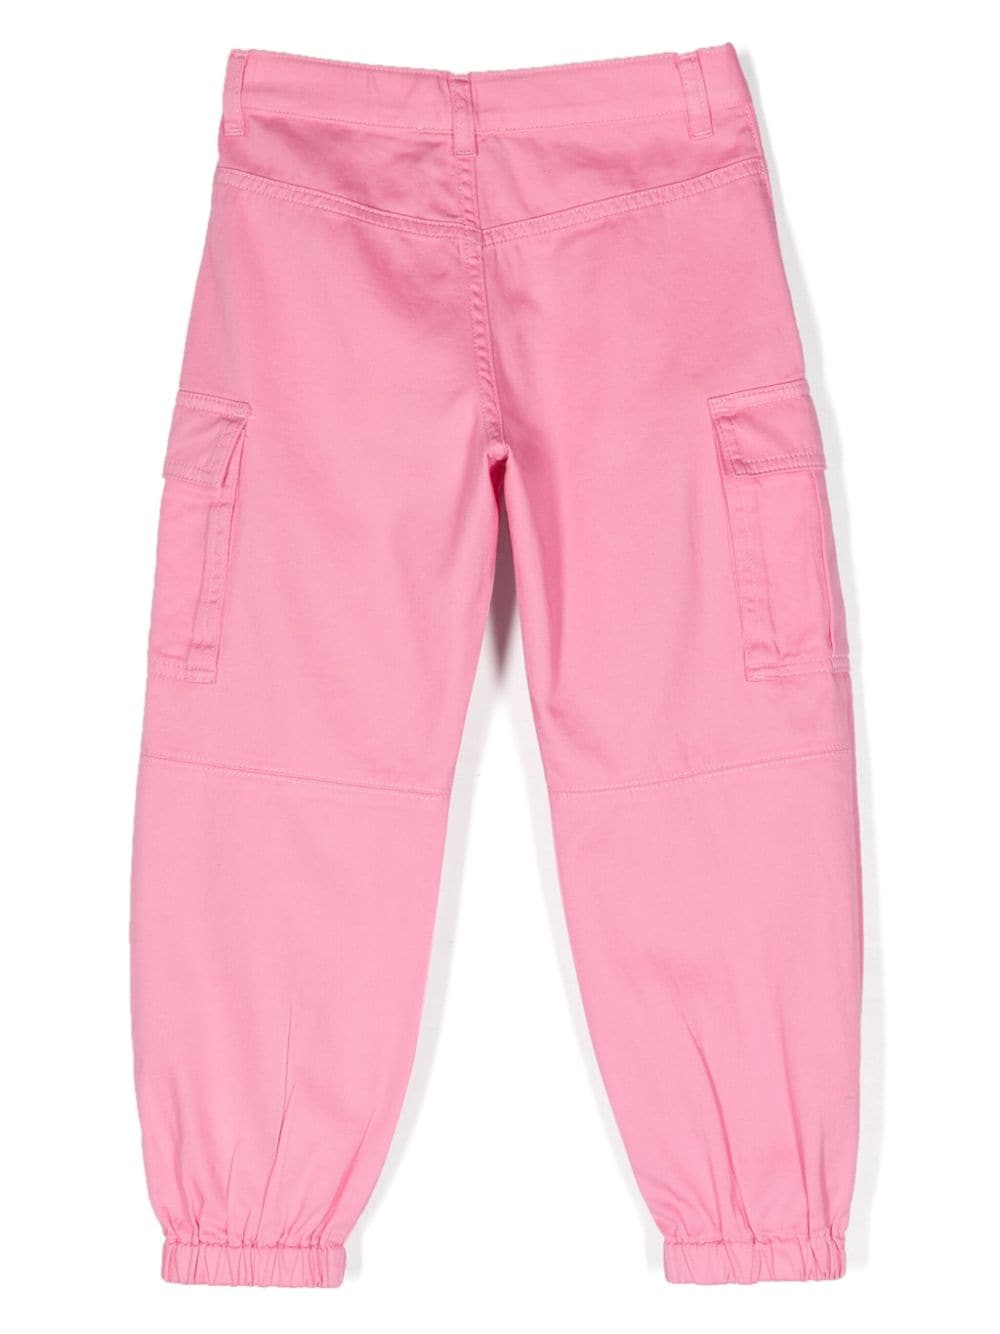 Pantaloni cargo rosa bambina